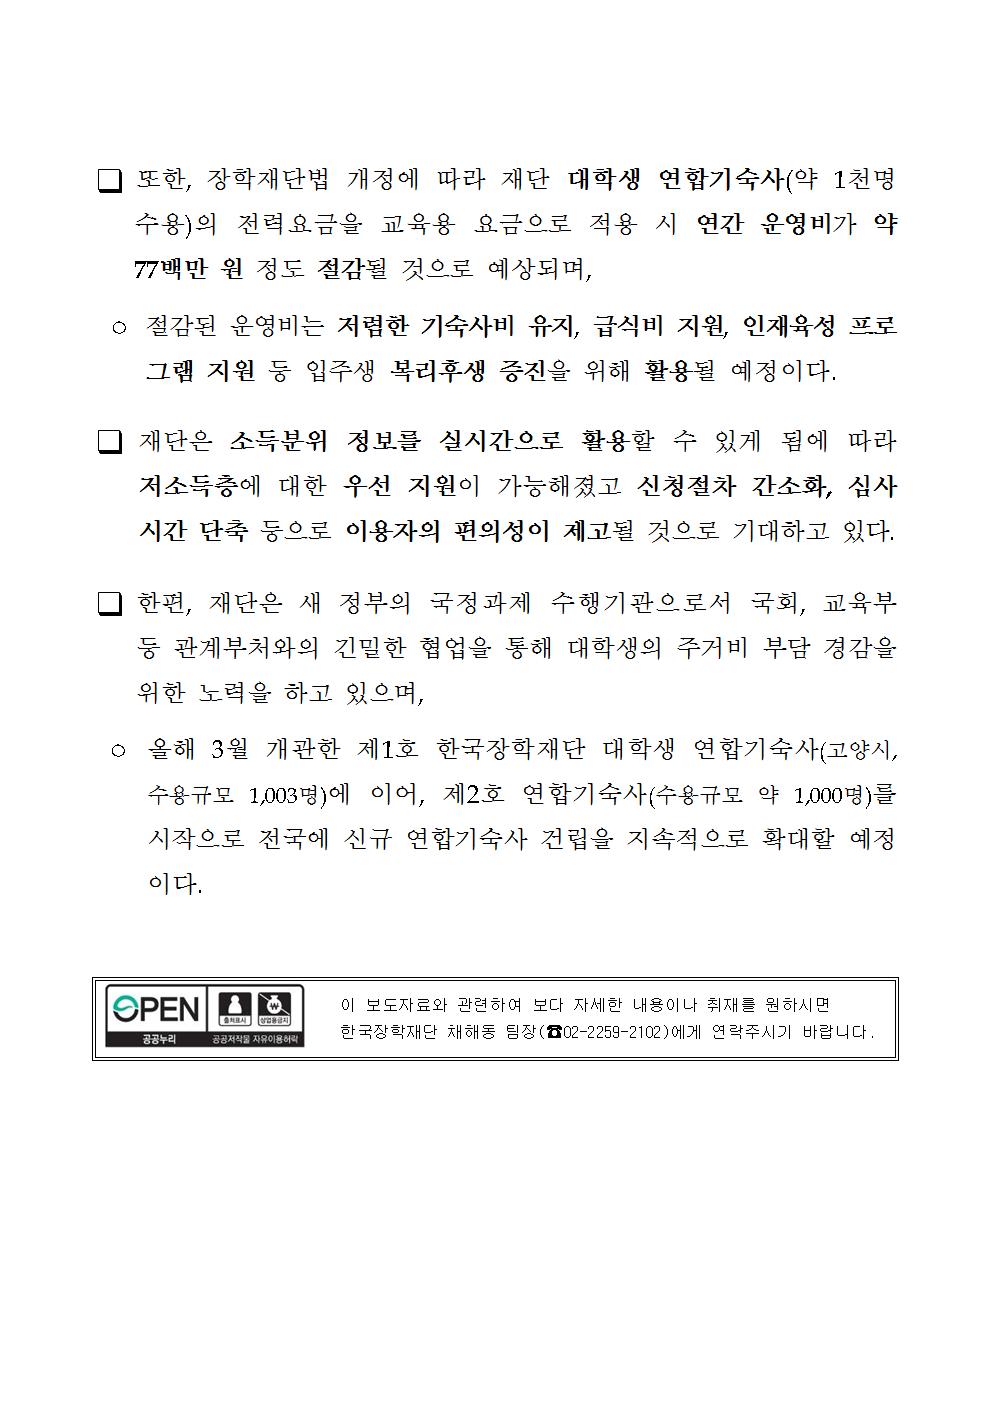 09-29(금)[보도자료] 장학재단법 개정안 본회의 의결002.jpg